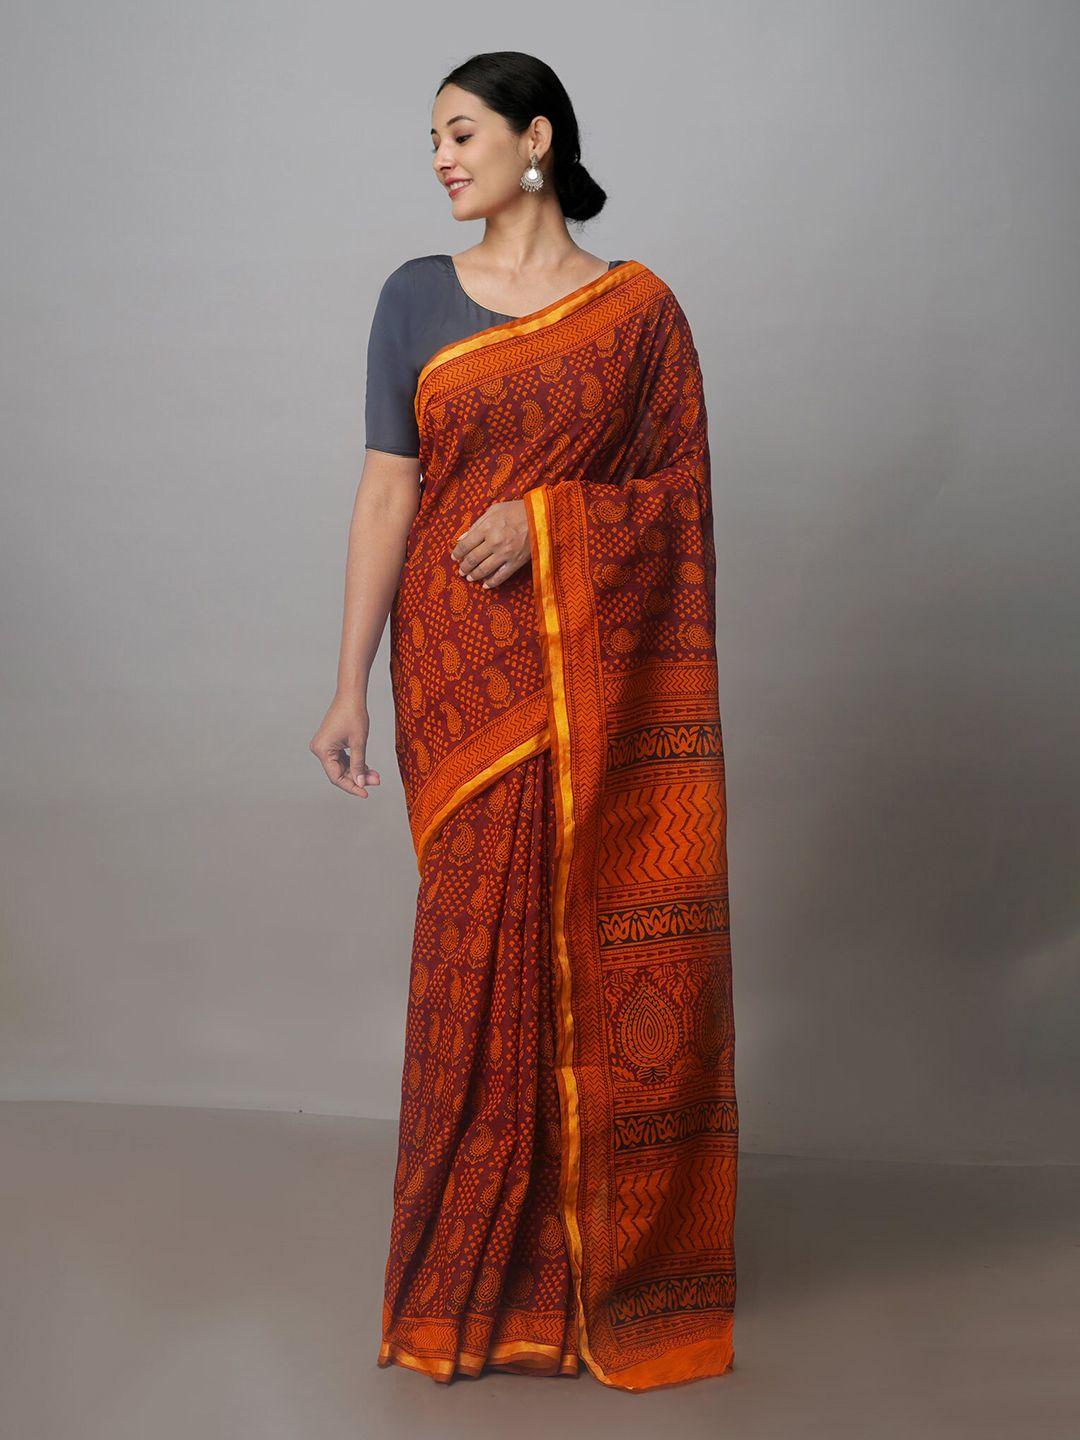 unnati silks ethnic motifs printed zari chanderi saree